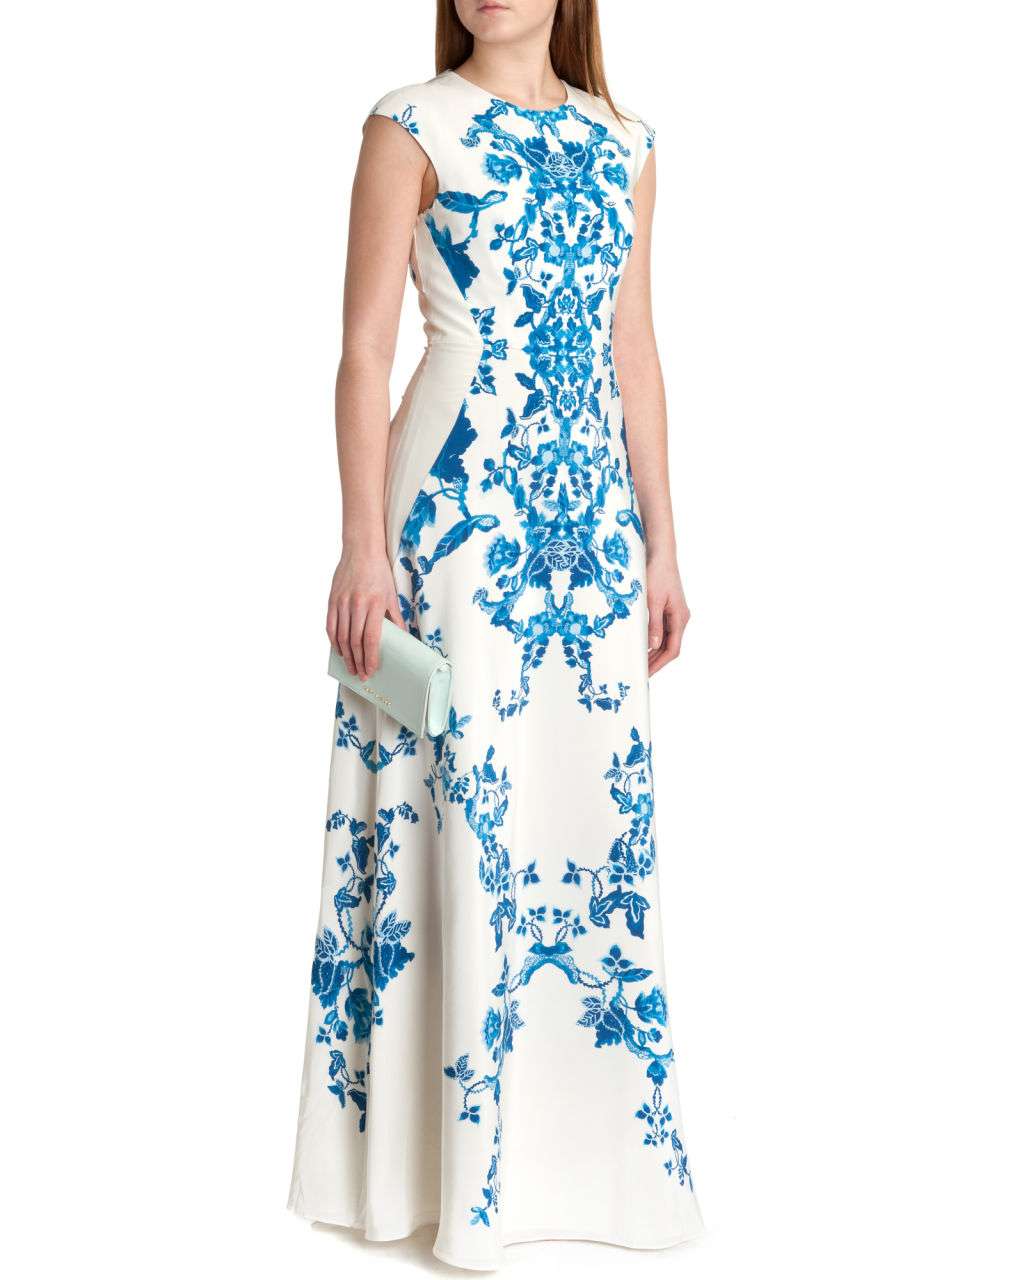 uk-Womens-Clothing-Maxi-Dresses-NELUM-China-blue-print-maxi-dress-Cream-WS4W_NELUM_97-CREAM_2.jpg